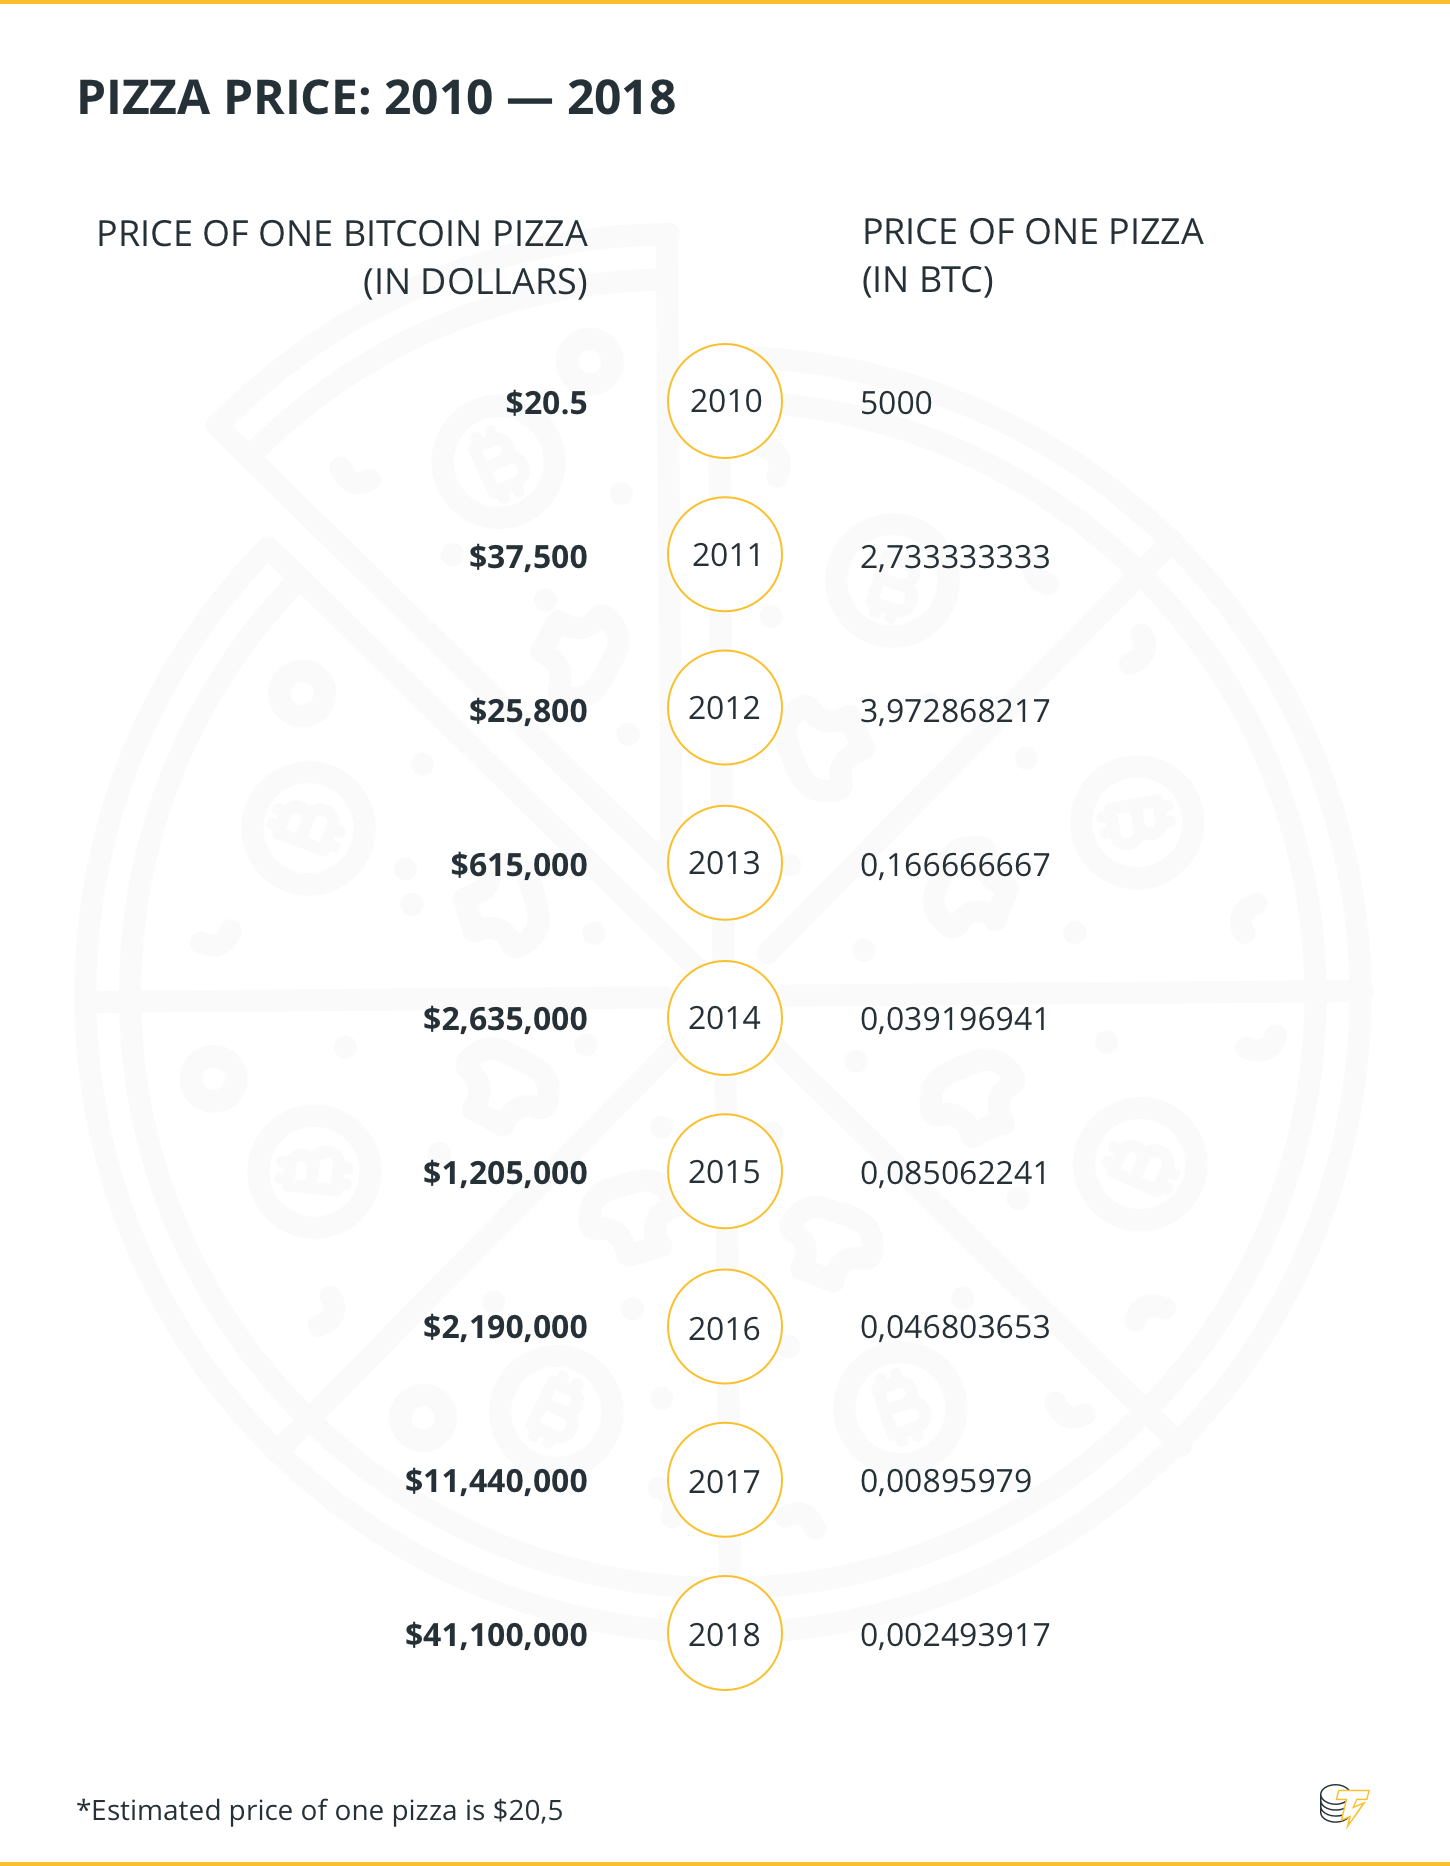 Pizza Price: 2010 - 2018